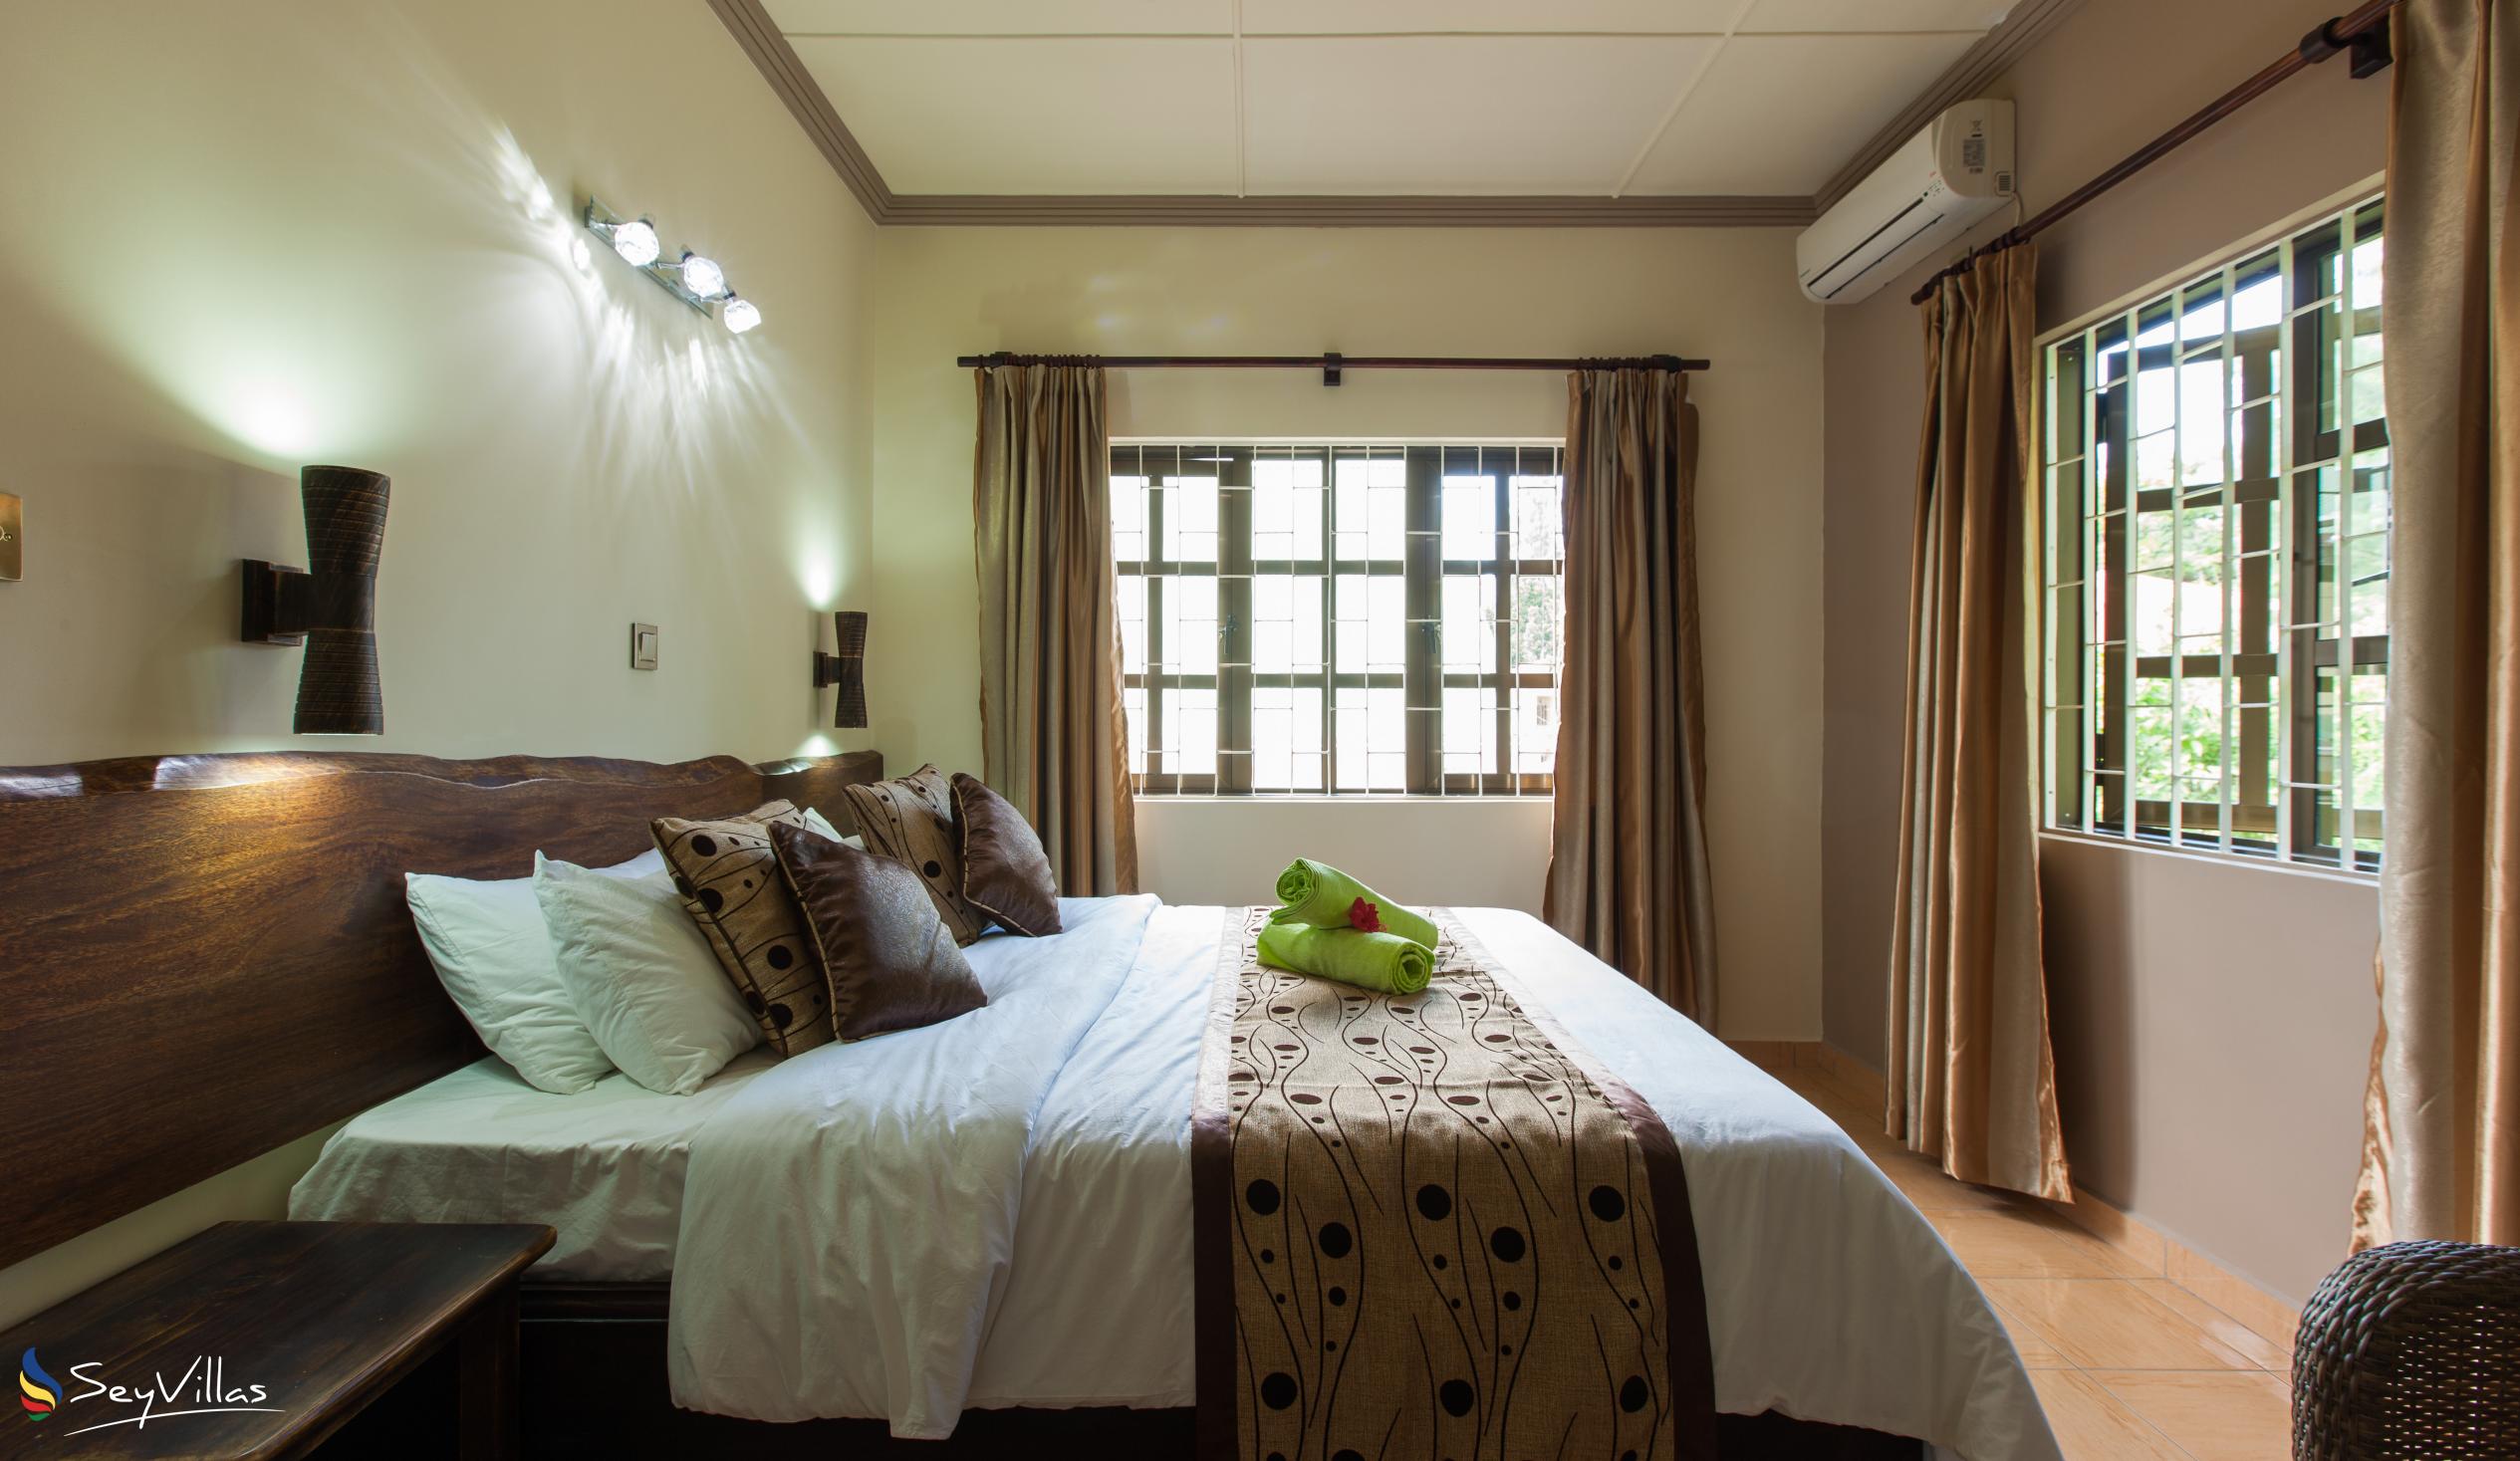 Foto 51: Chez Bea Villa - Appartamento con 2 camere - Praslin (Seychelles)